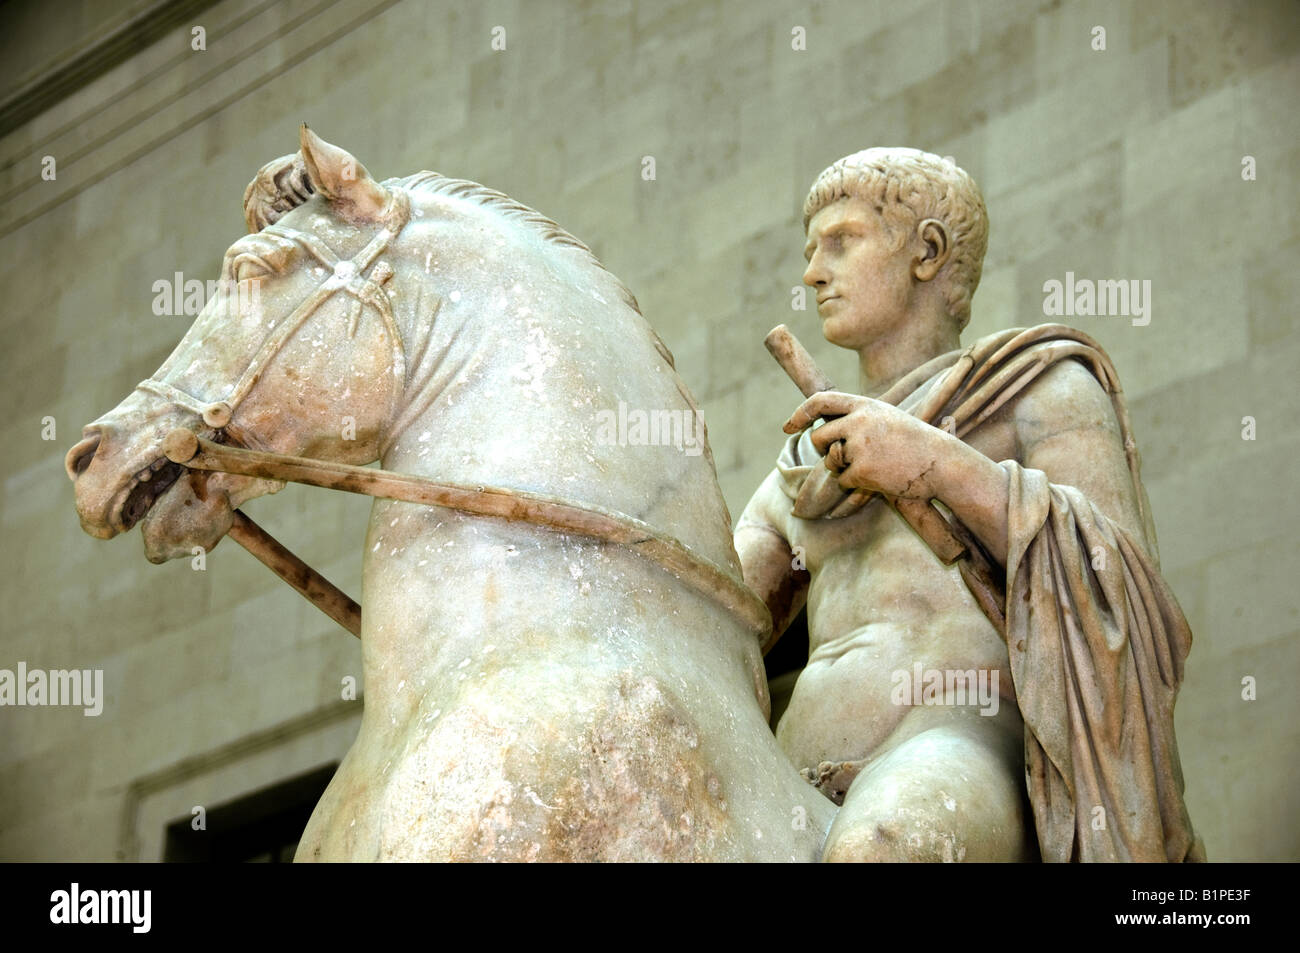 Statua in marmo la gioventù a cavallo roma romano del I secolo d.c. Foto Stock